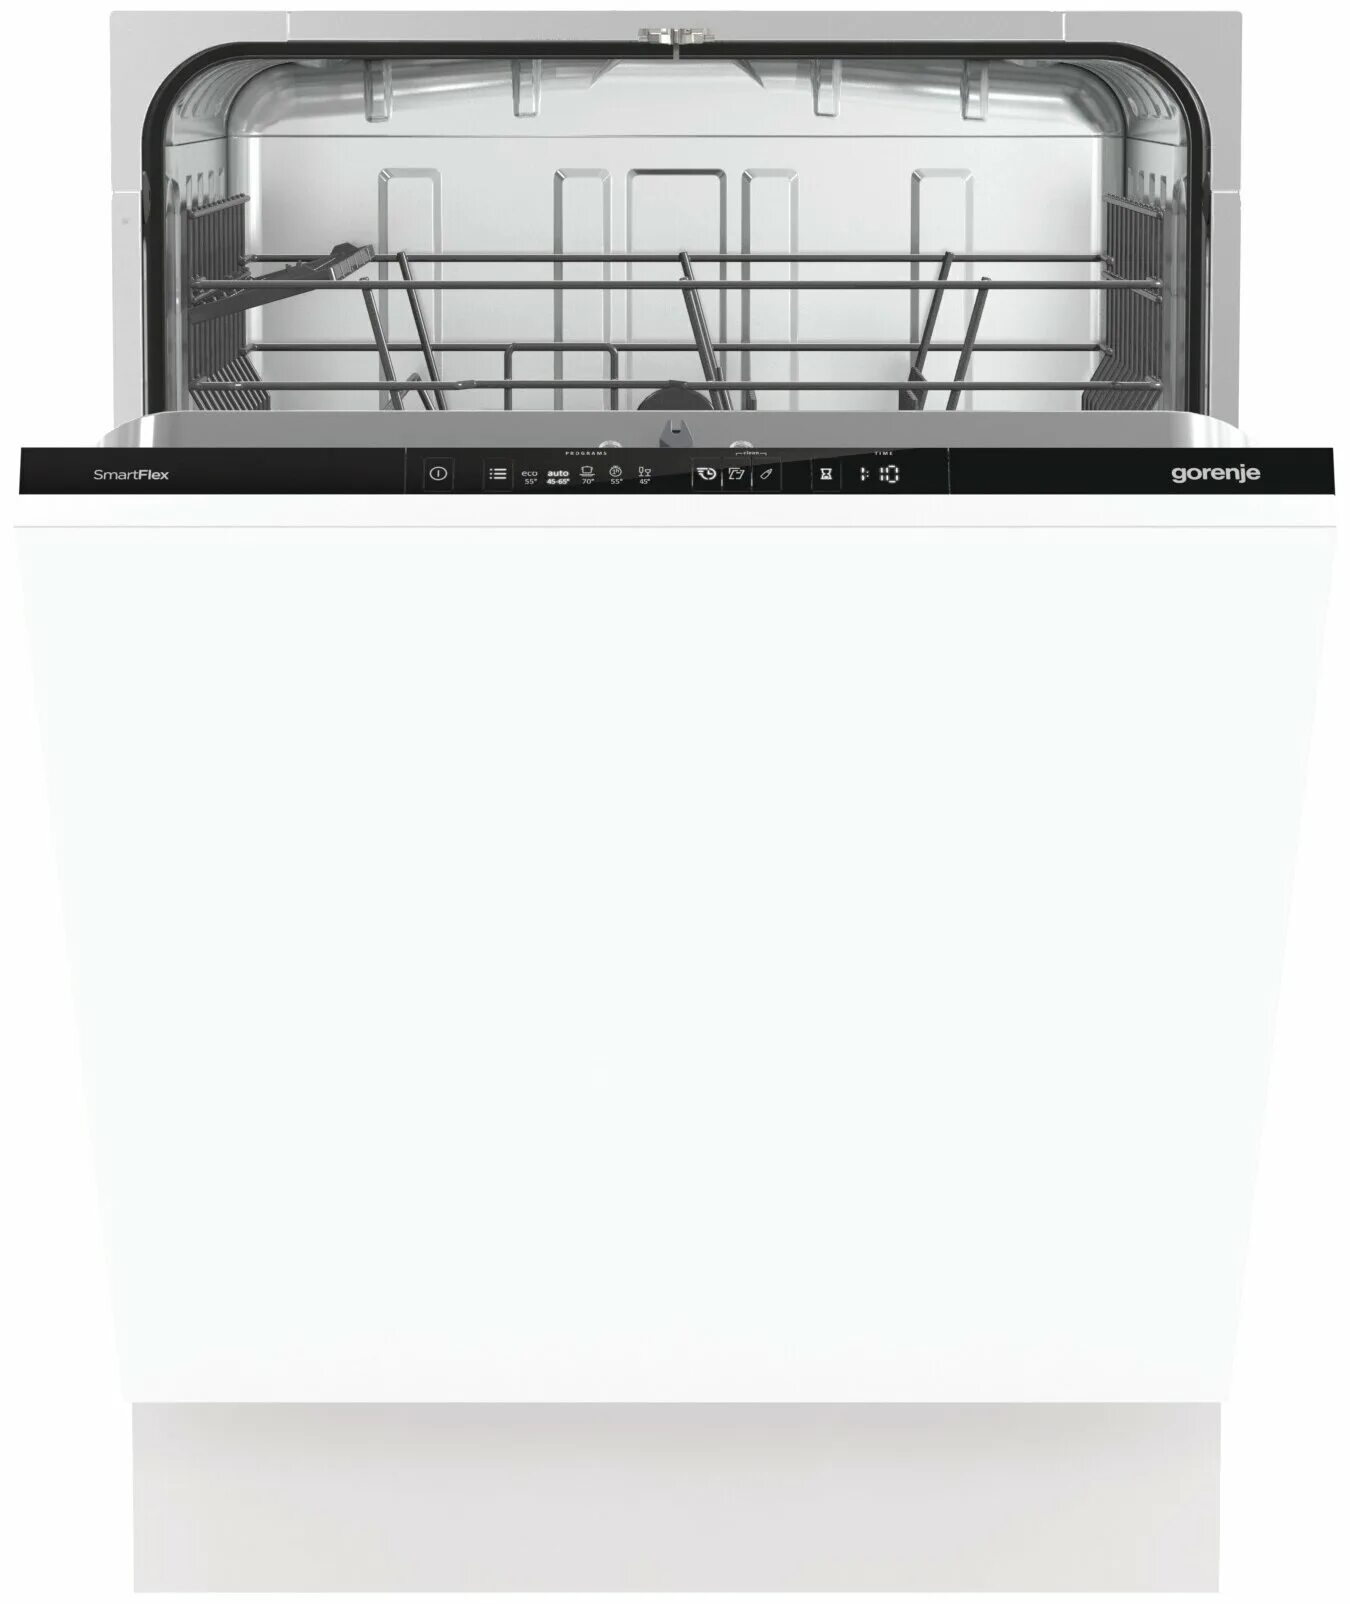 Посудомоечная машина Gorenje gv672c62. Встраиваемая посудомоечная машина 60 см Gorenje gv661d60. Машина посудомоечная Gorenje GV 661d60. Gorenje gv620e10.